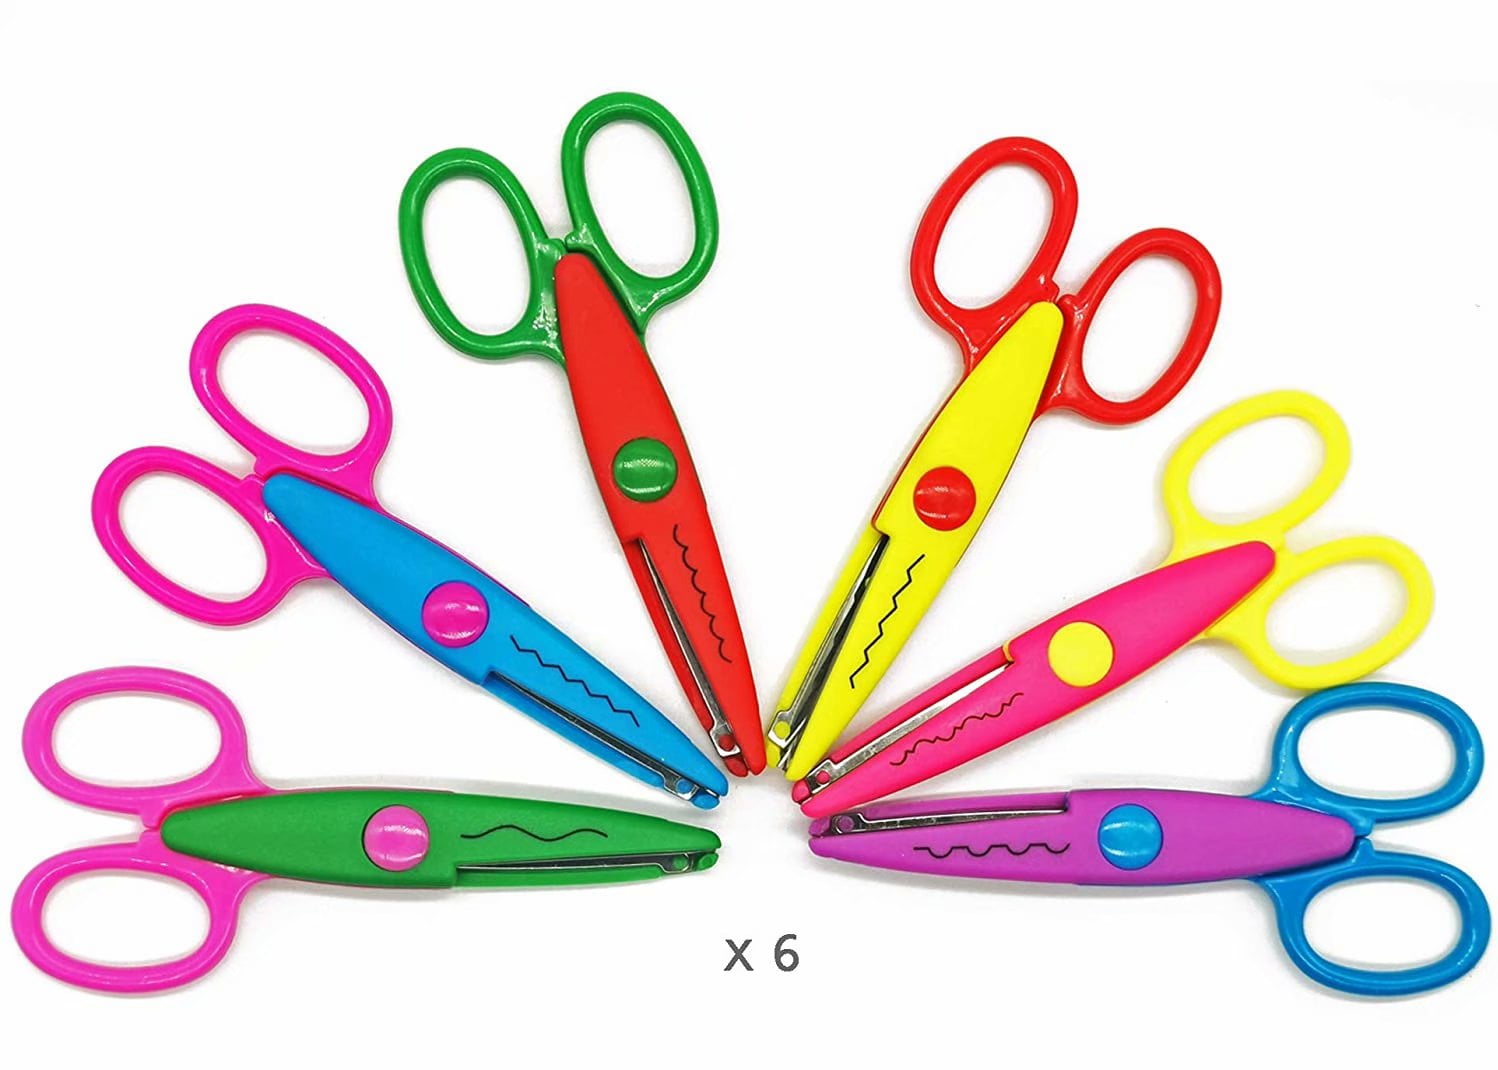 6 pcs/lot DIY Craft Scissors Wave Edge Craft School Scissors for